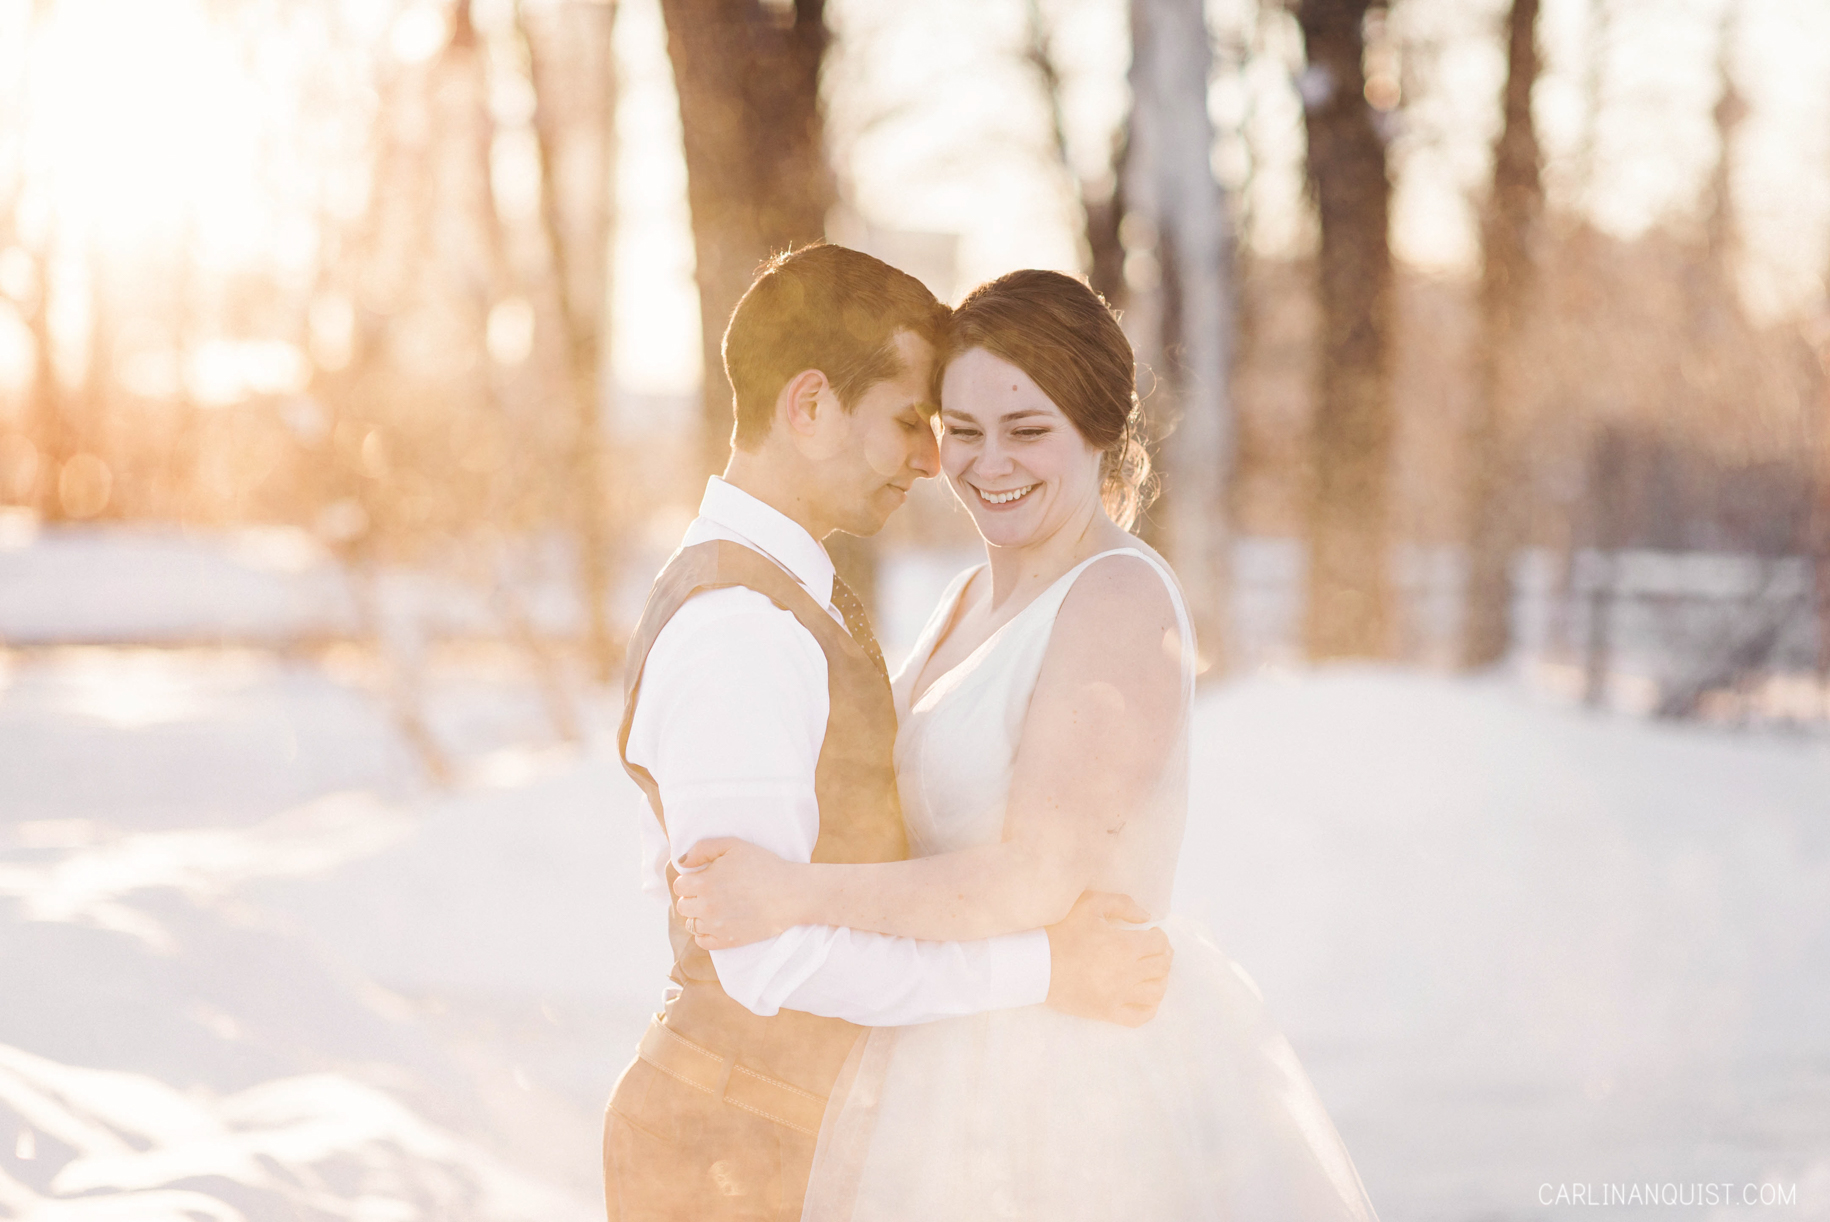 Calgary Winter Wedding Photos